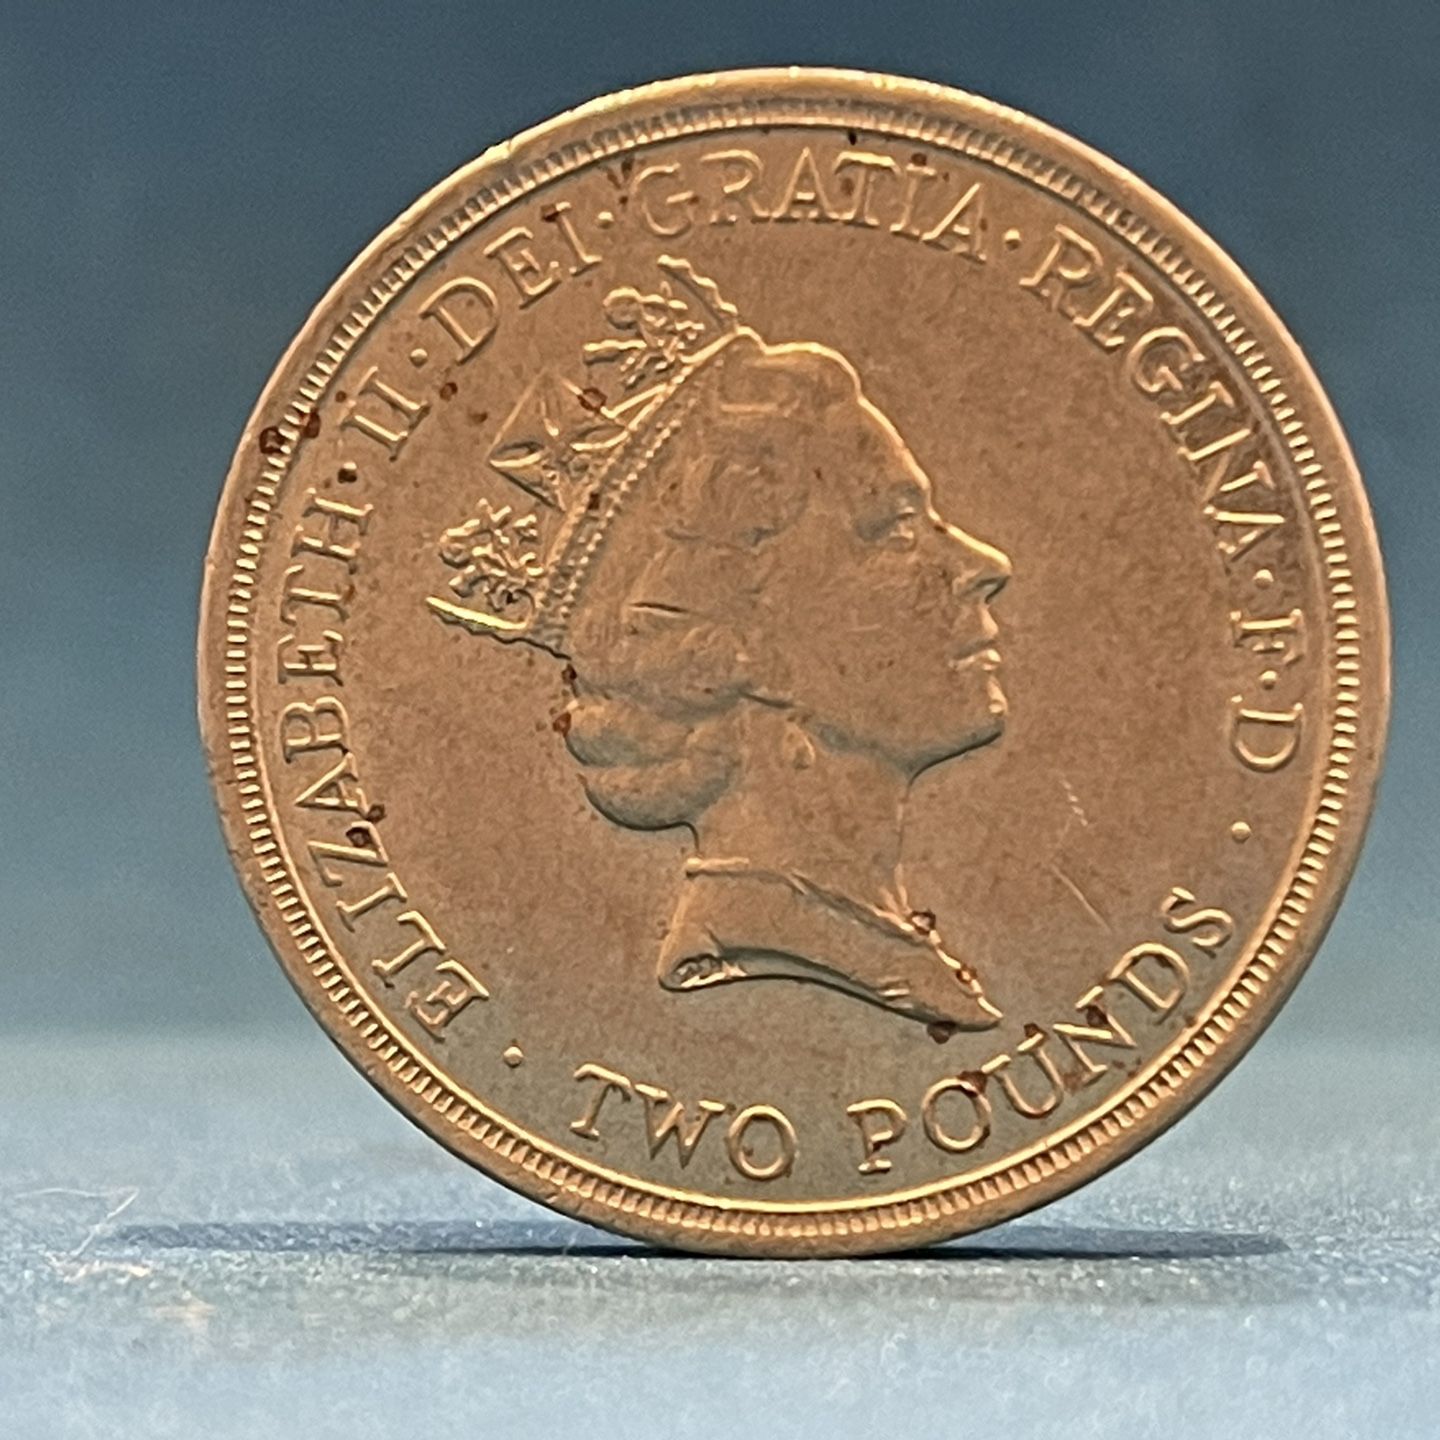 Dove 2£ Error Coin